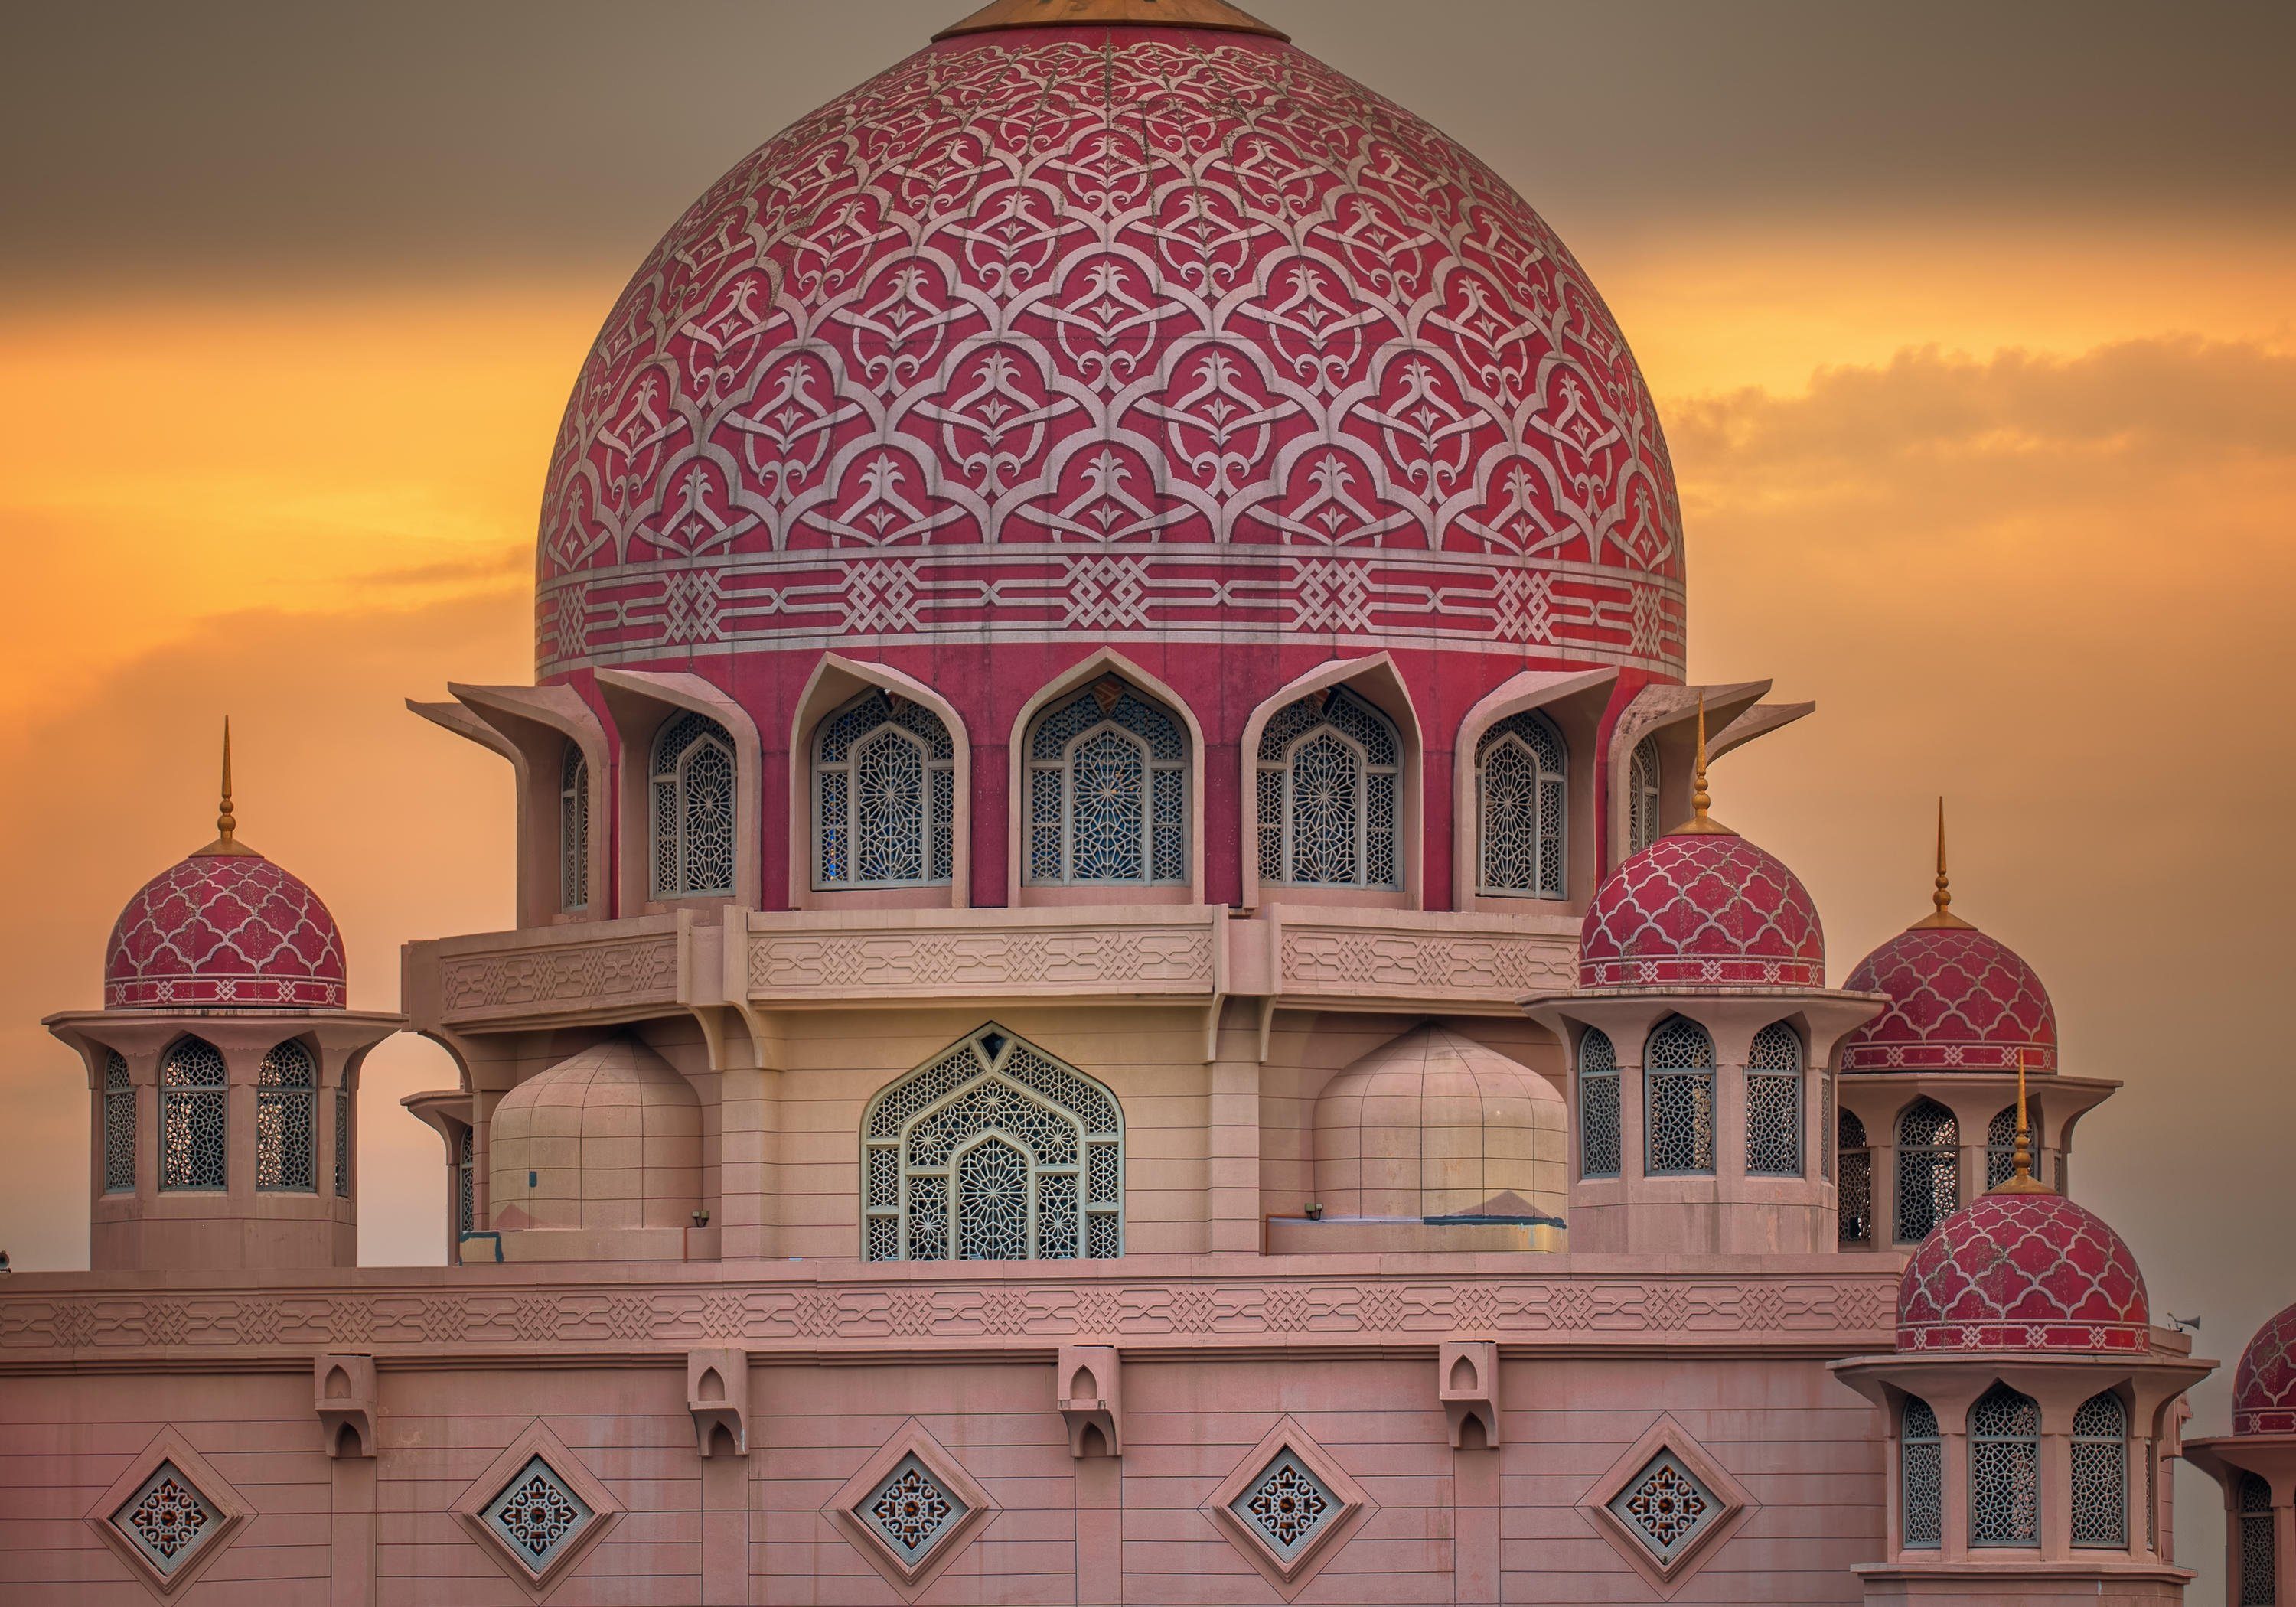 wandmotiv24 Fototapete Vliestapete über Sonnenuntergang glatt, Motivtapete, Wandtapete, matt, Putrajaya-Moschee